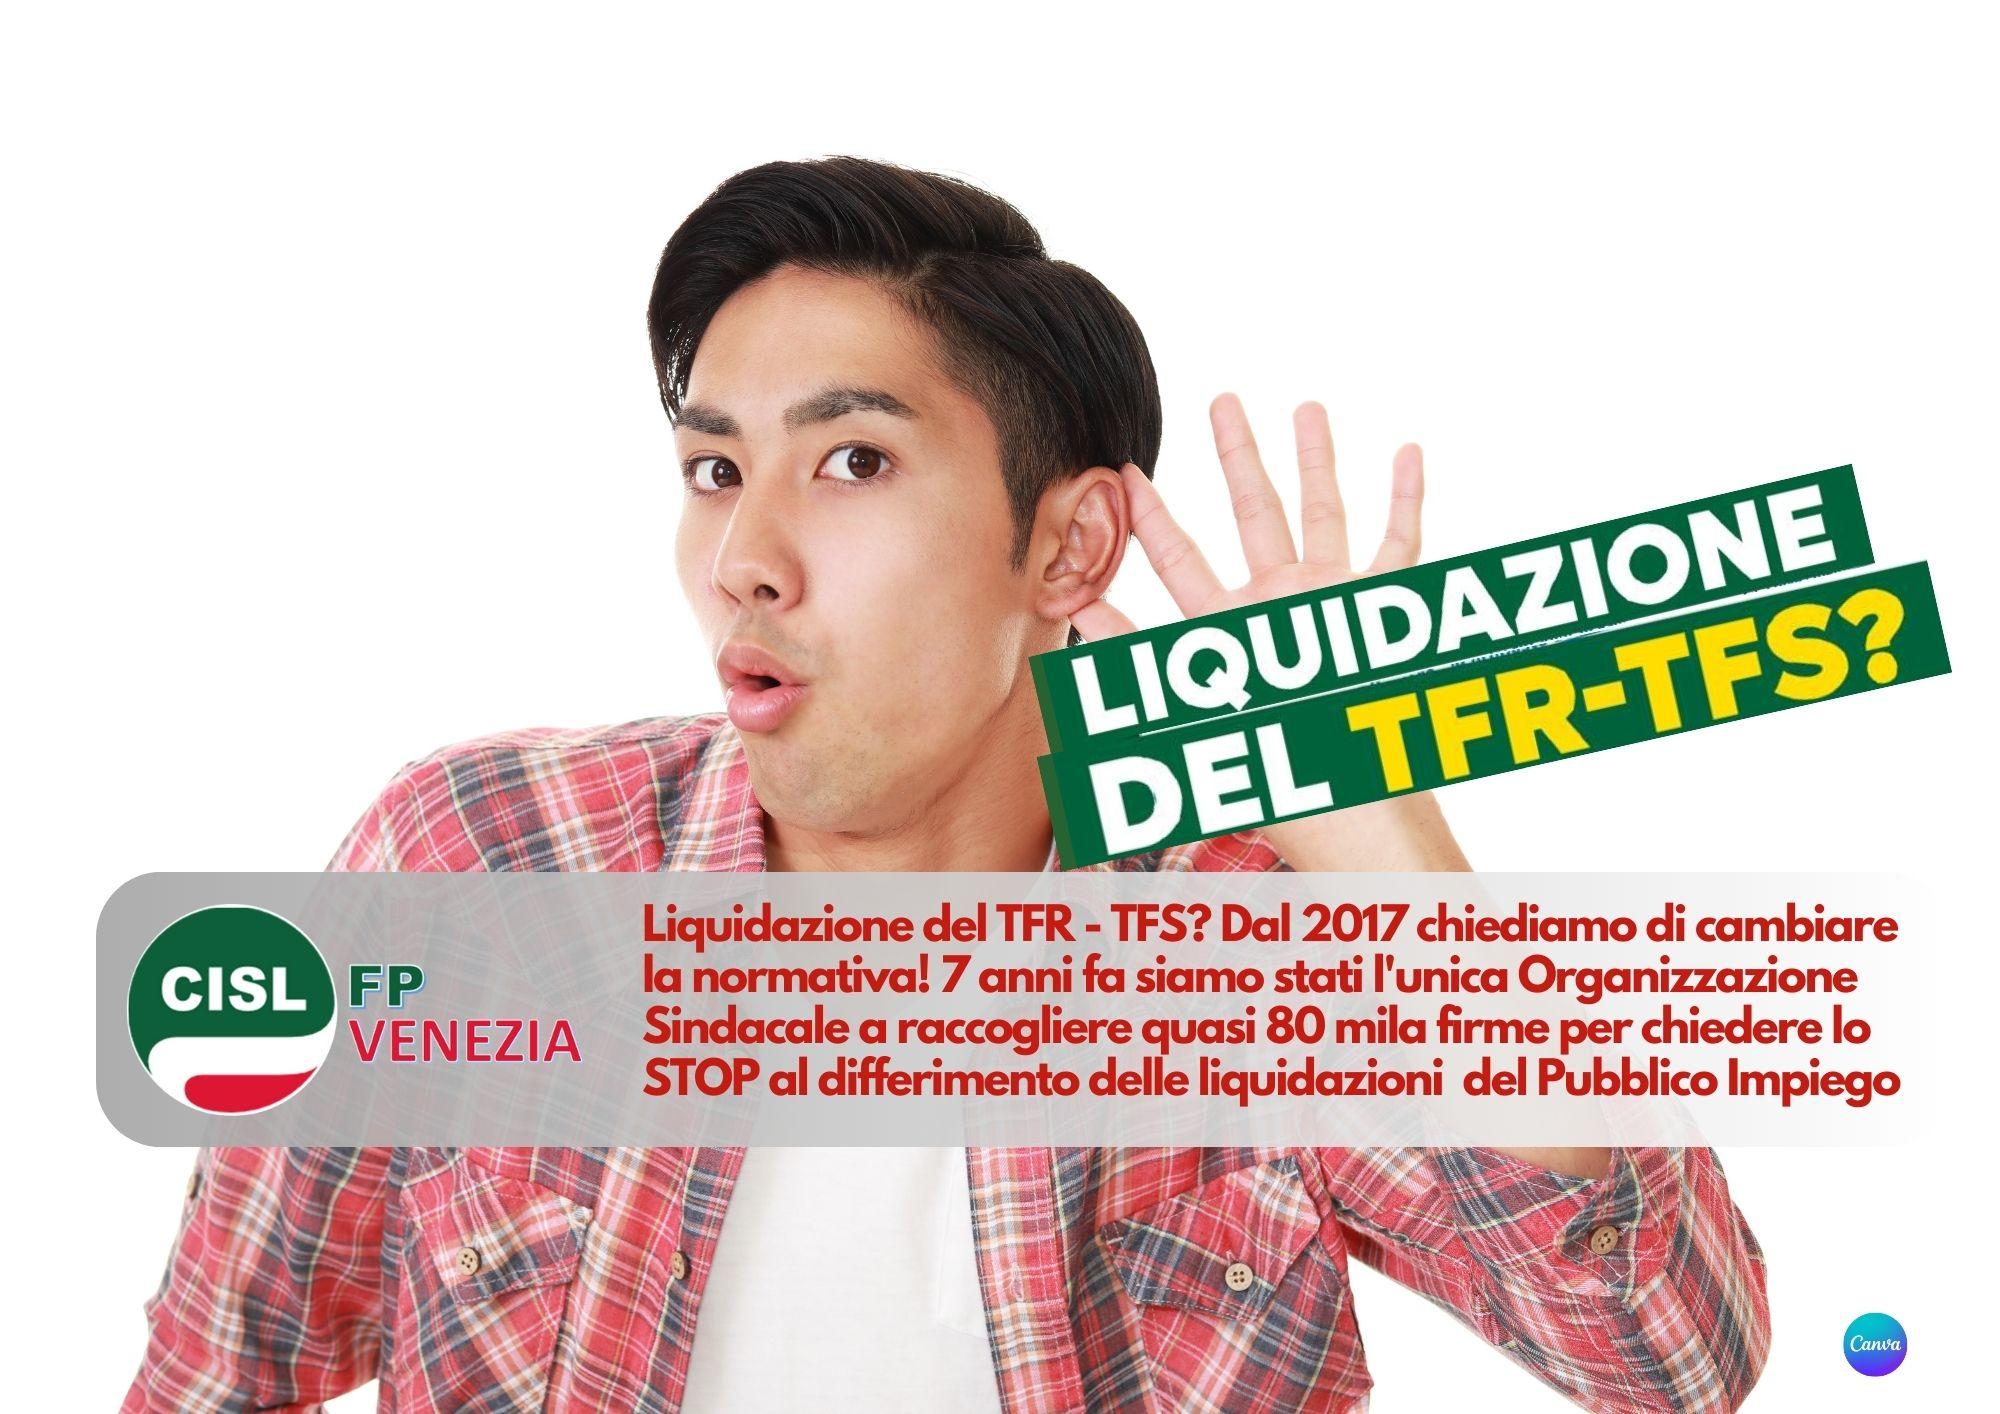 CISL FP Venezia. Liquidazione del TFR - TFS? Dal 2017 chiediamo di cambiare la normativa!